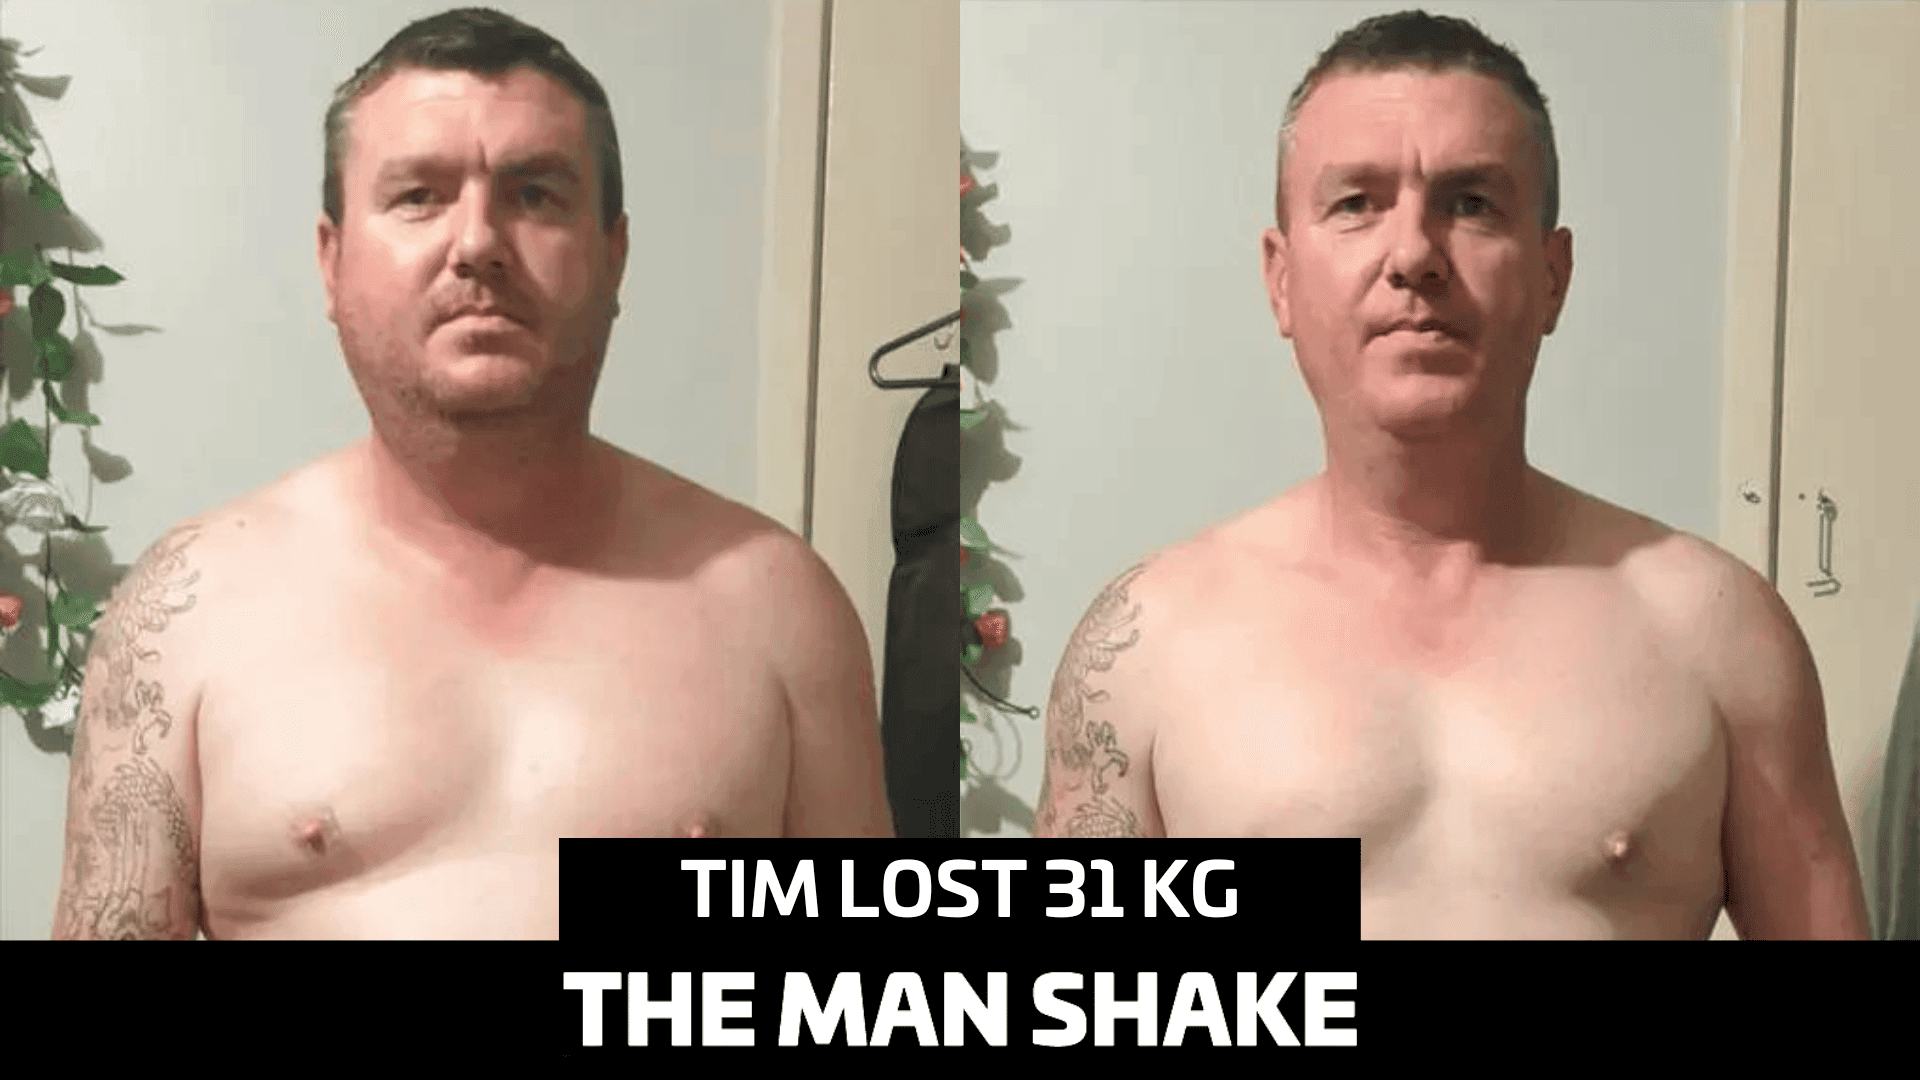 Tim had enough so he dropped 31kg